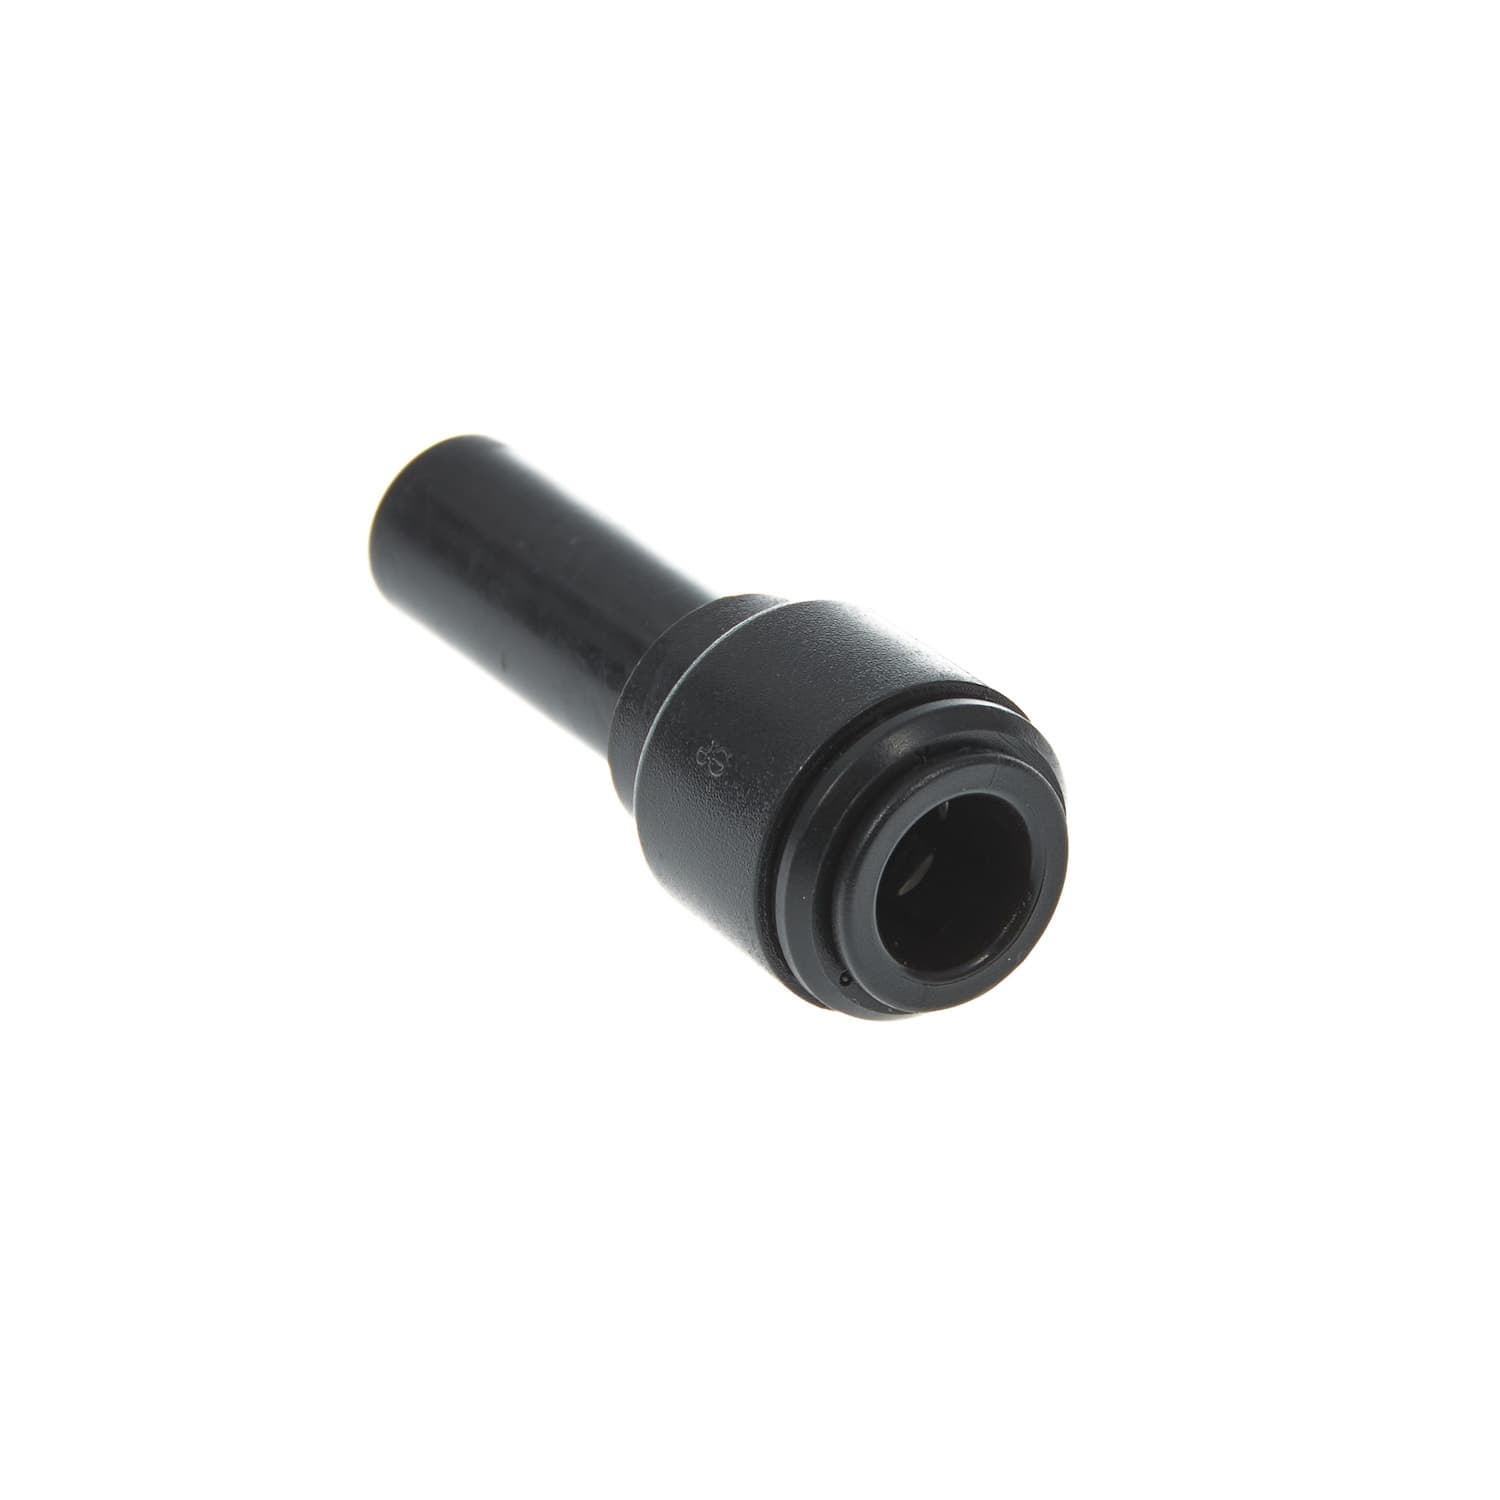 Einsteck-Reduzierverbinder mit 12 mm Stutzen auf 10 mm Rohr in schwarz